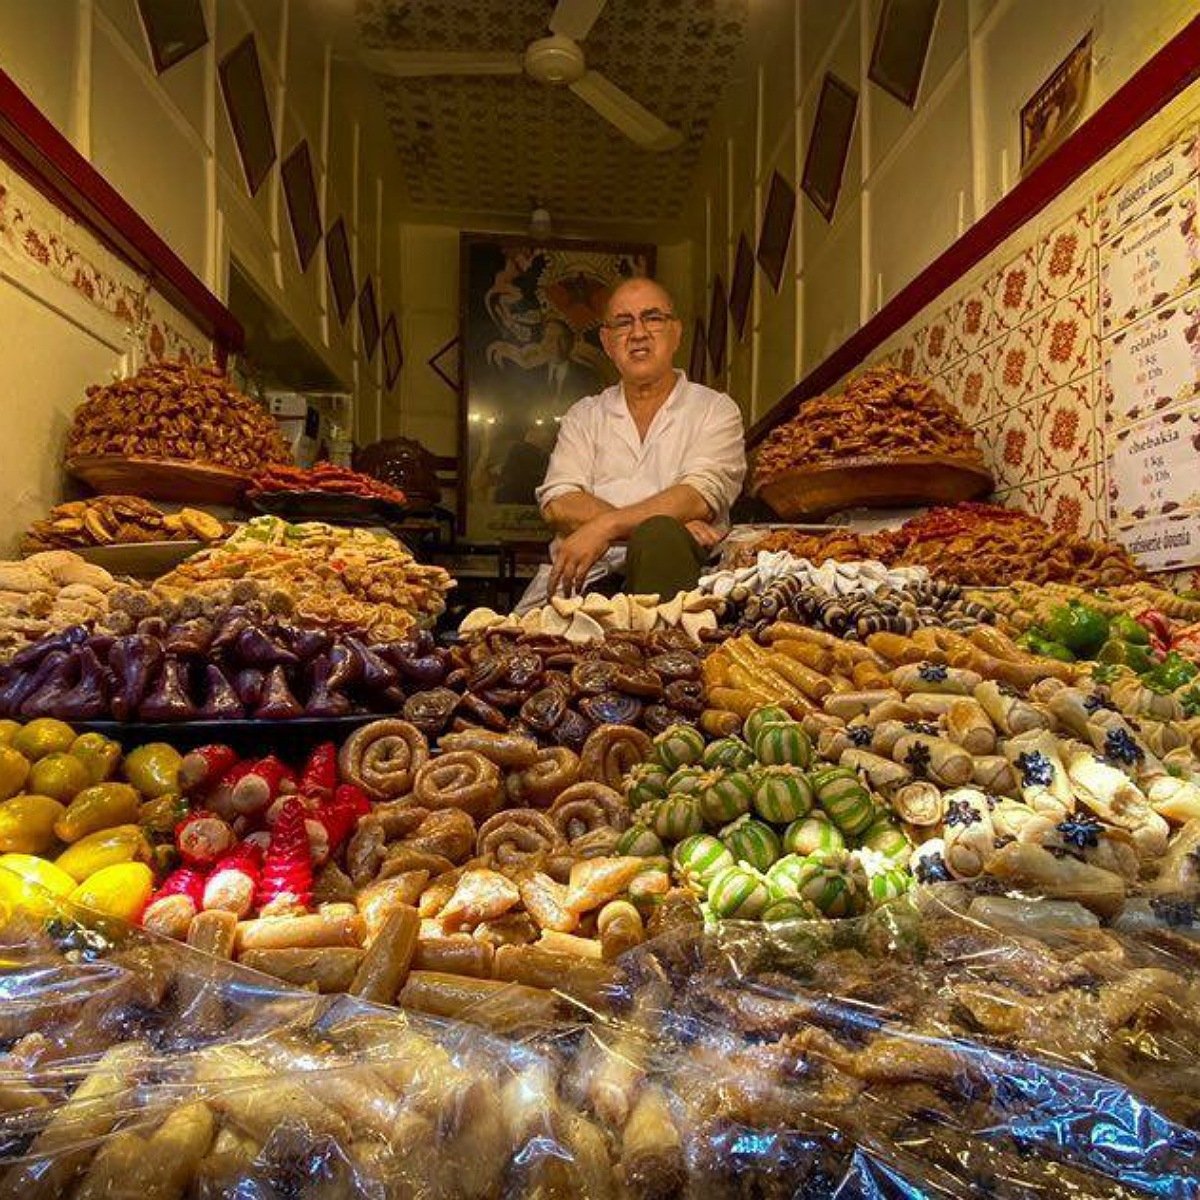 Puesto de dulces árabes en la Plaza Jemaad el fna, Marrakech